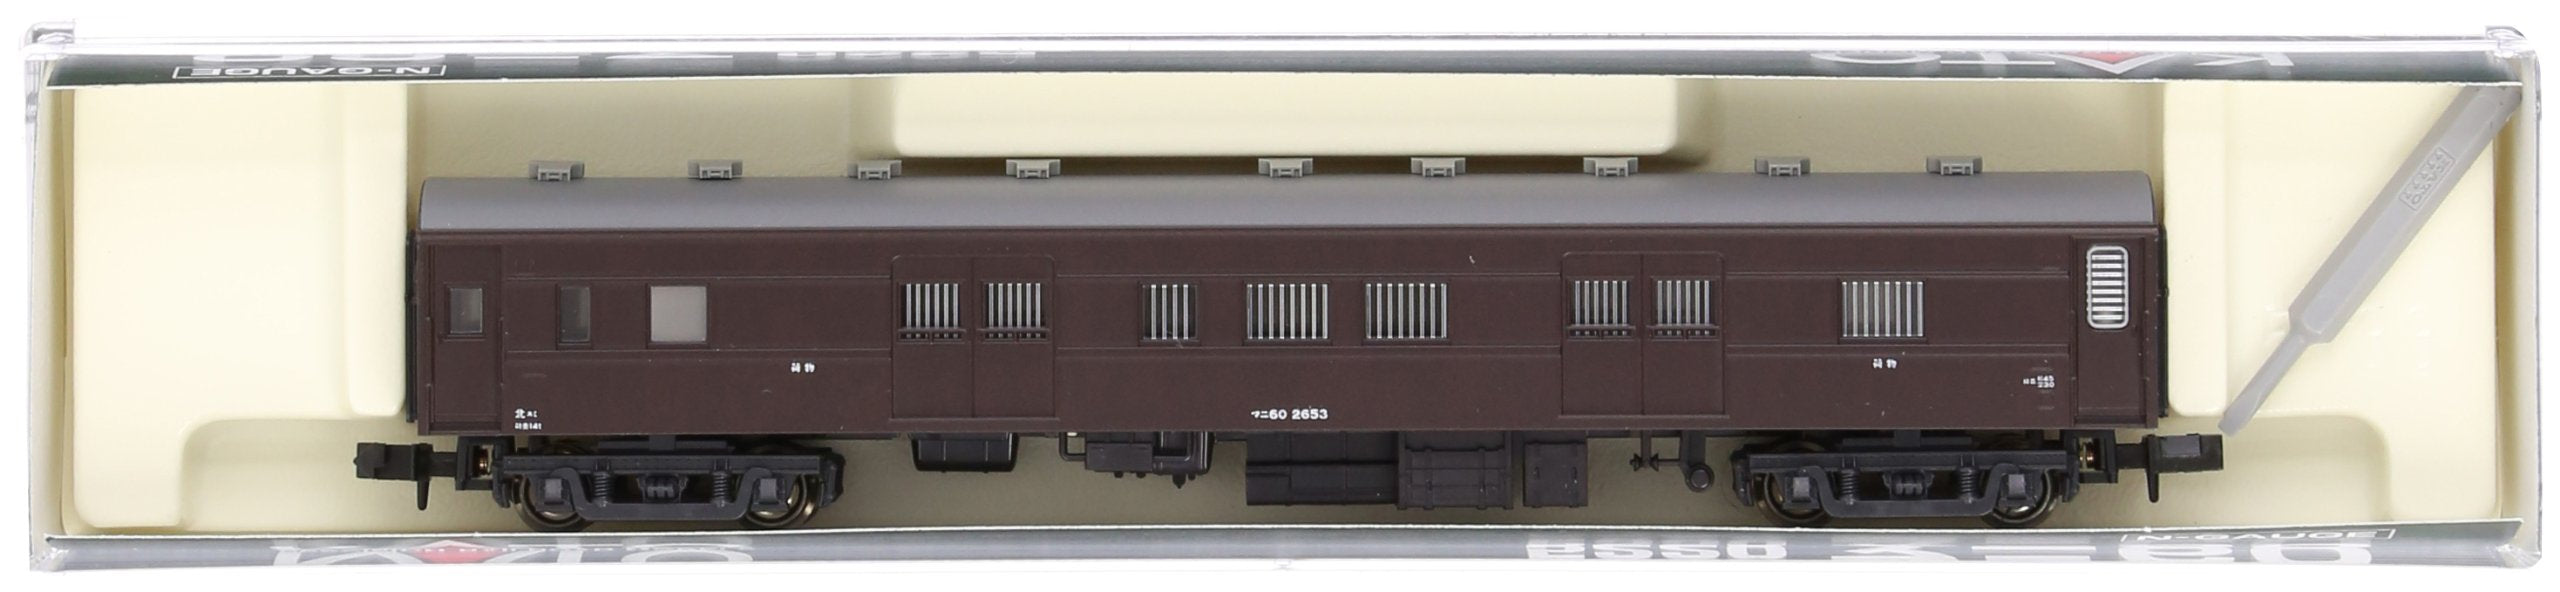 Kato Passenger Railway Model Car N Gauge Mani 60 5220